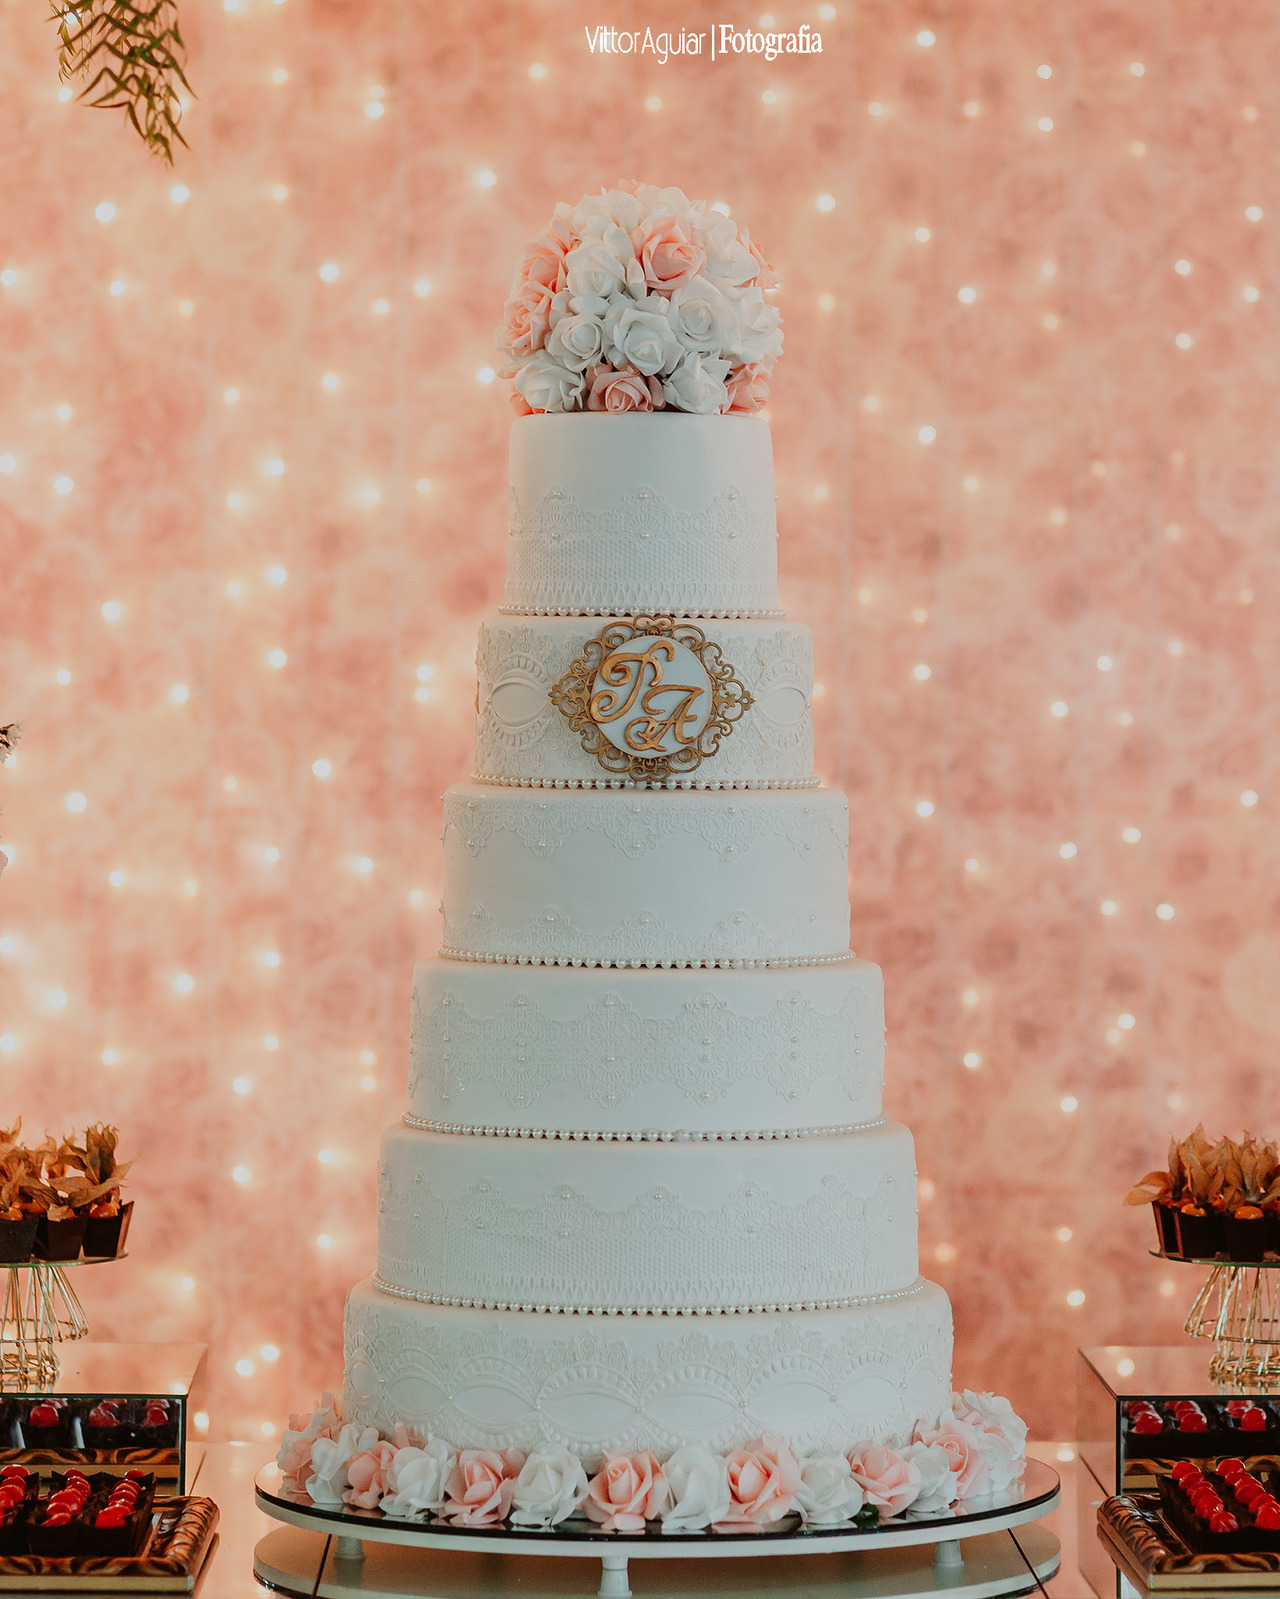 Dicas para escolher o bolo de casamento perfeito – parte II